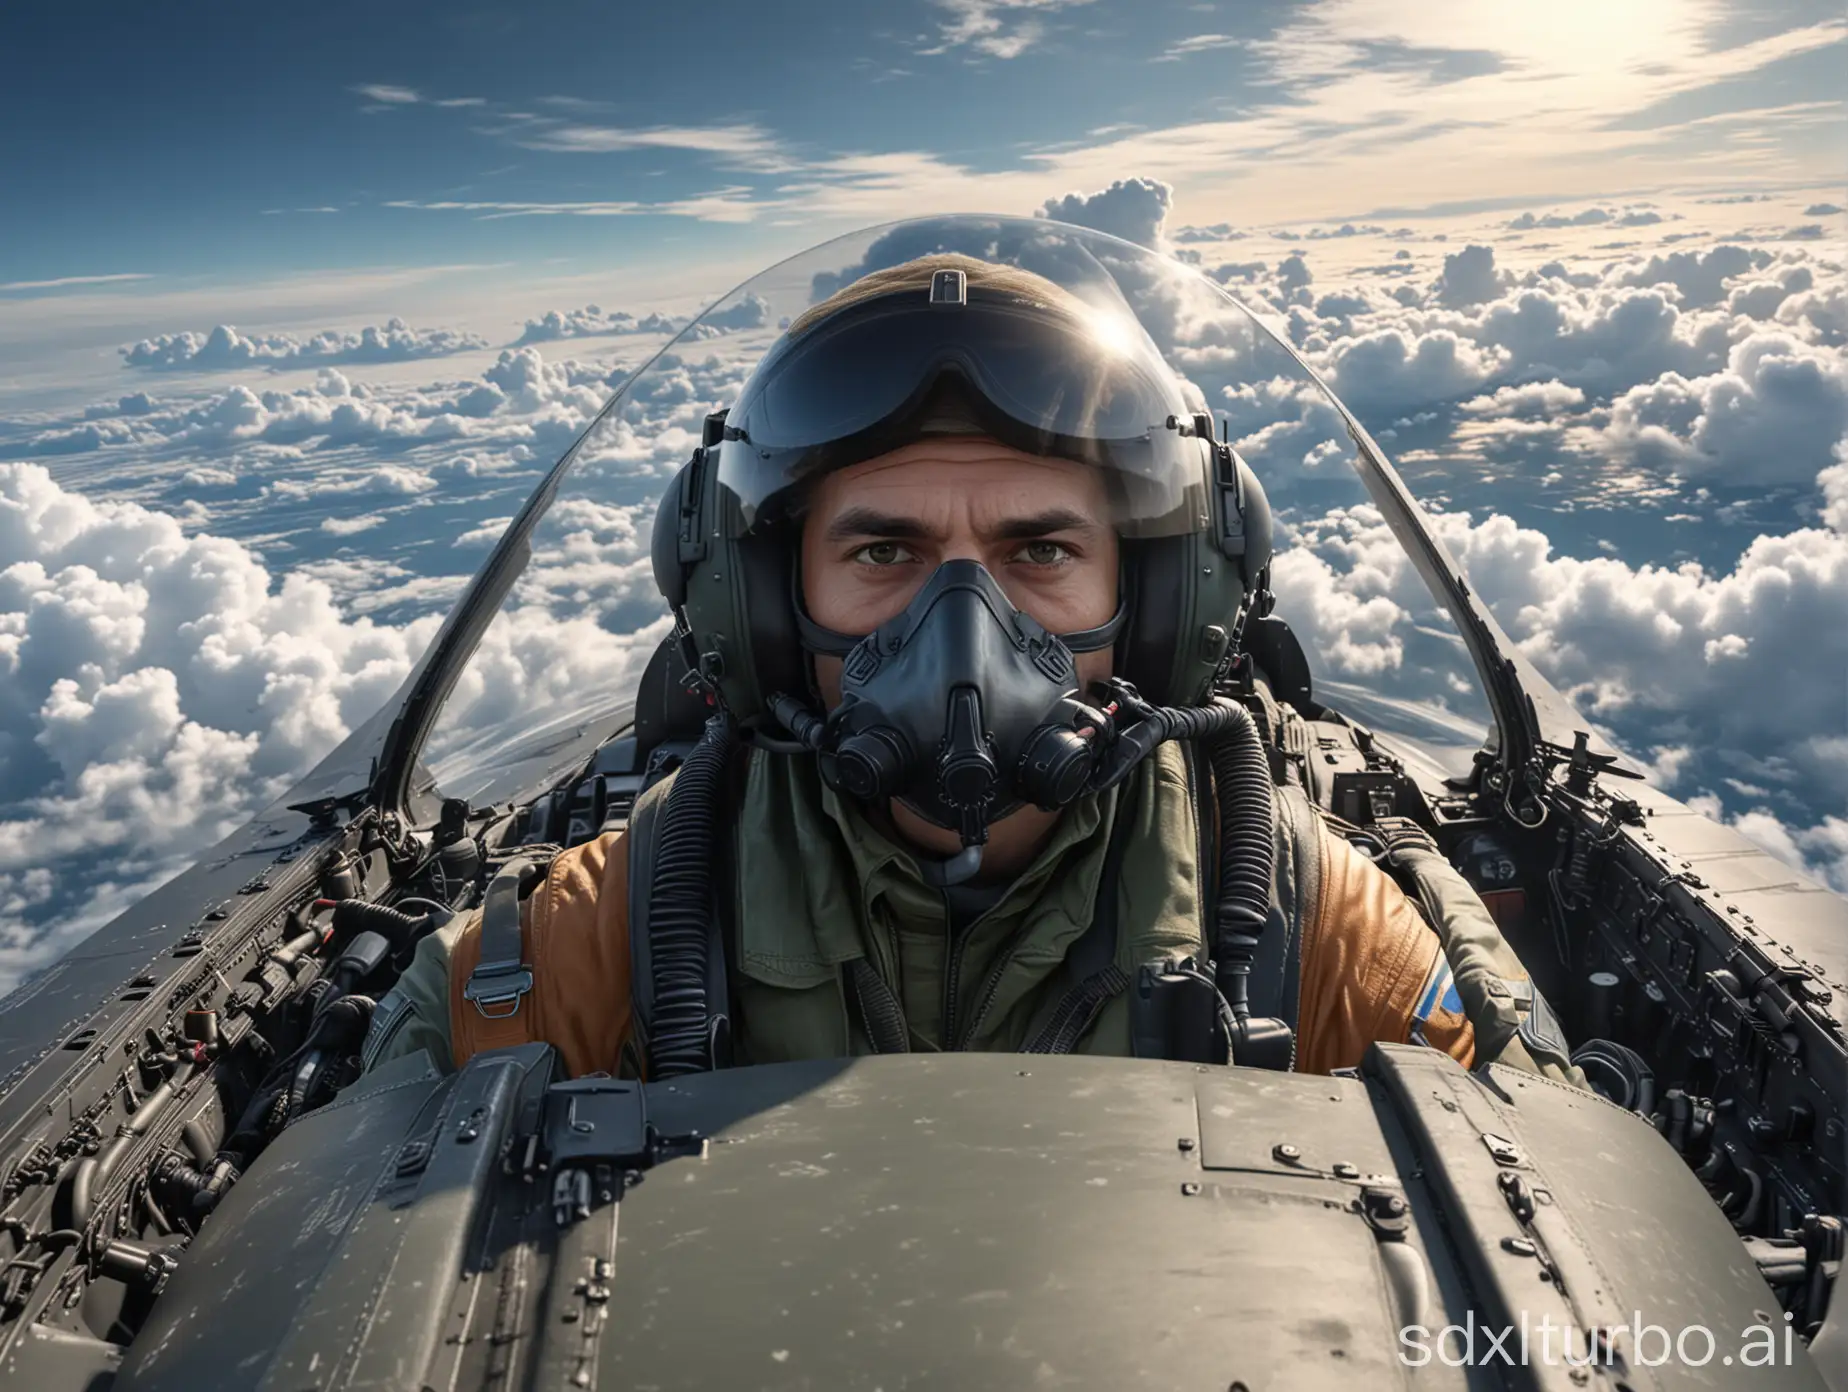 pilote de chasse dans le cockpit de son avion de chasse, vue de face, vitre de la verrière visible, au dessus des nuages, hyper détaillé, 8k, hyper réaliste